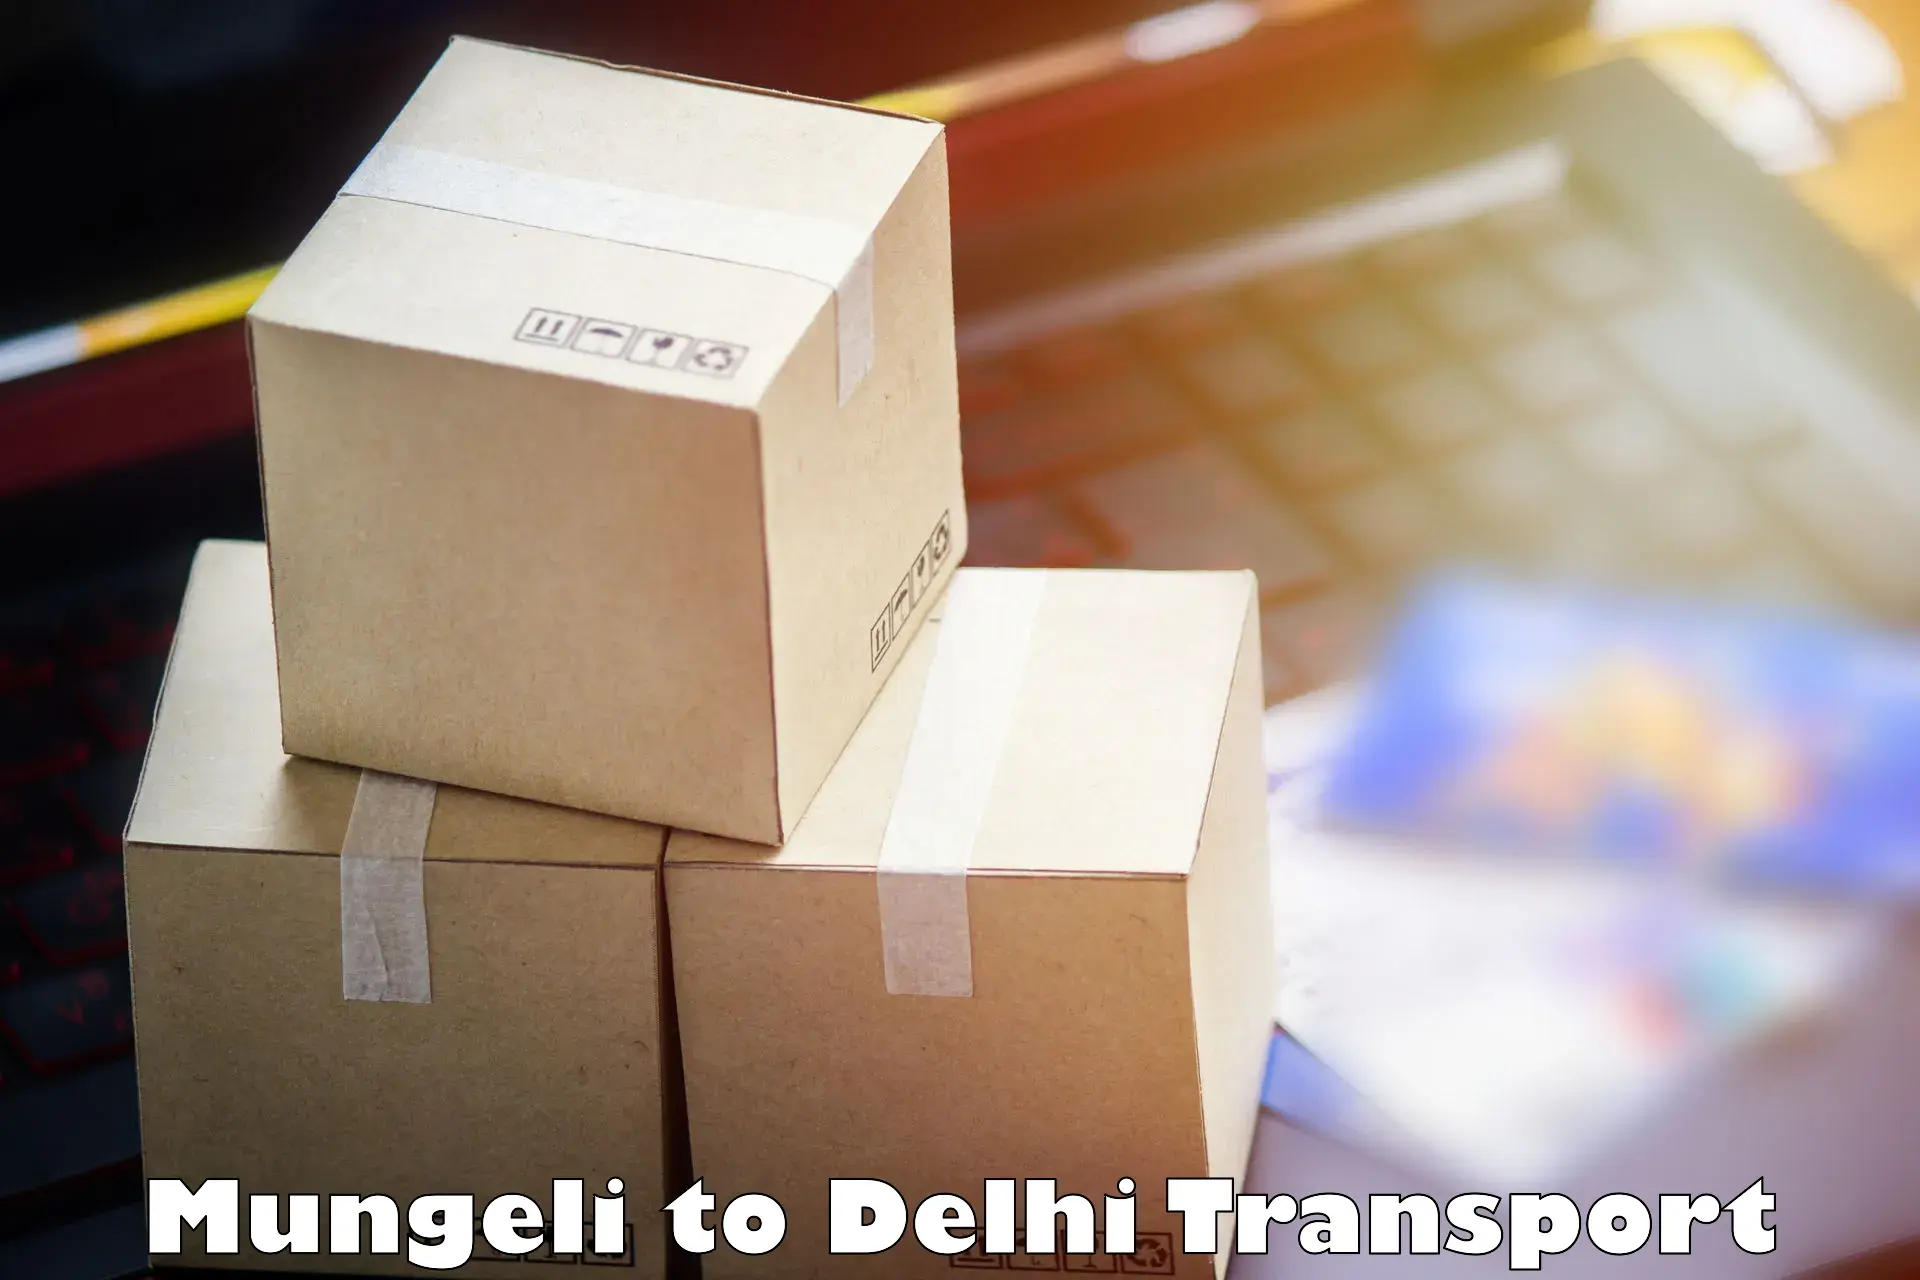 Online transport service Mungeli to Indraprastha